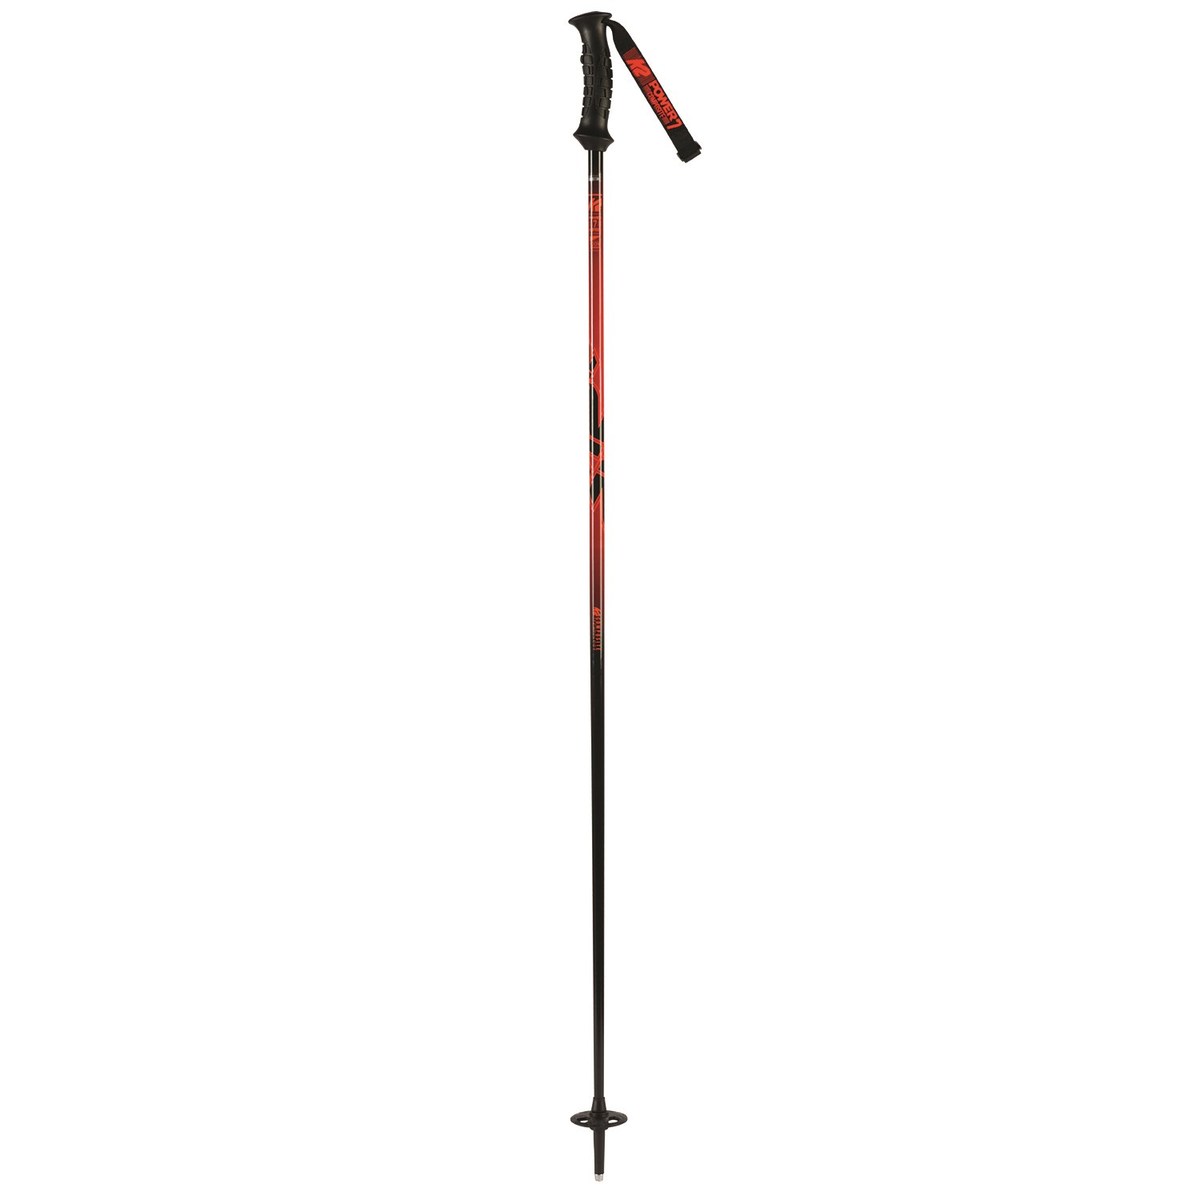 K2 Power 7 Composite skistokken - 110 cm